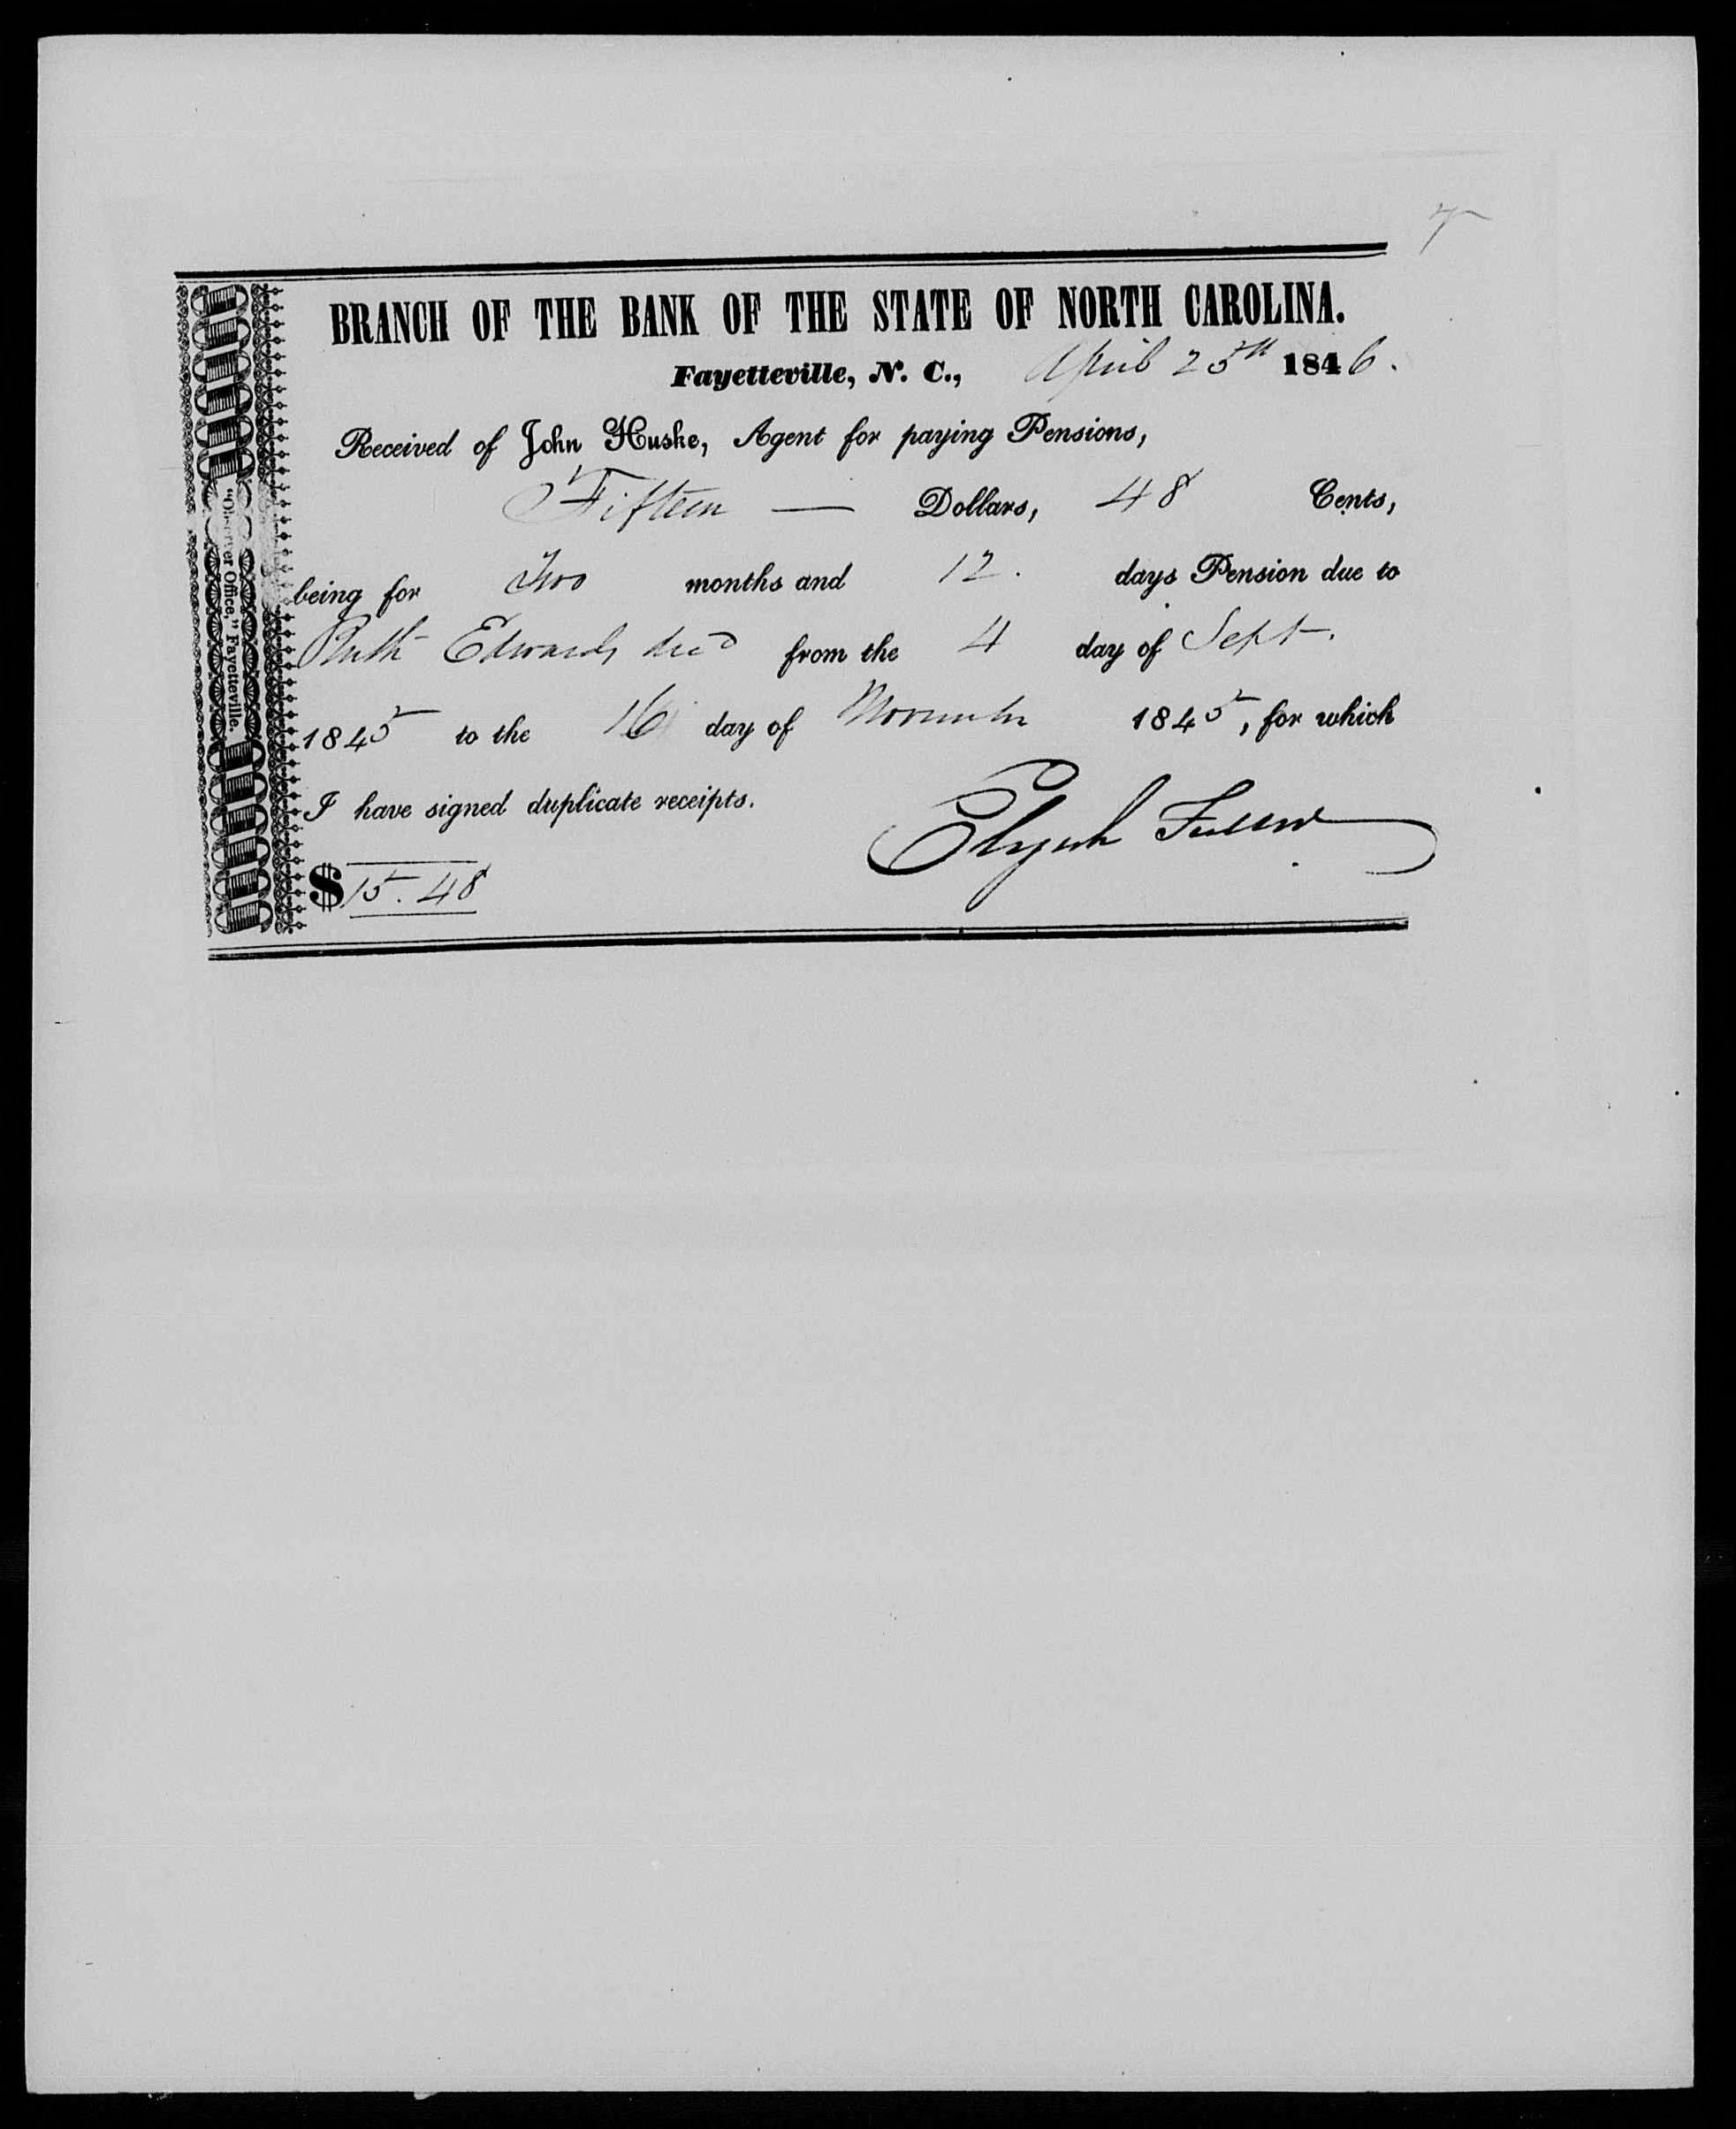 Receipt for Ruth Edwards from John Huske to Elijah Fuller, 25 April 1846